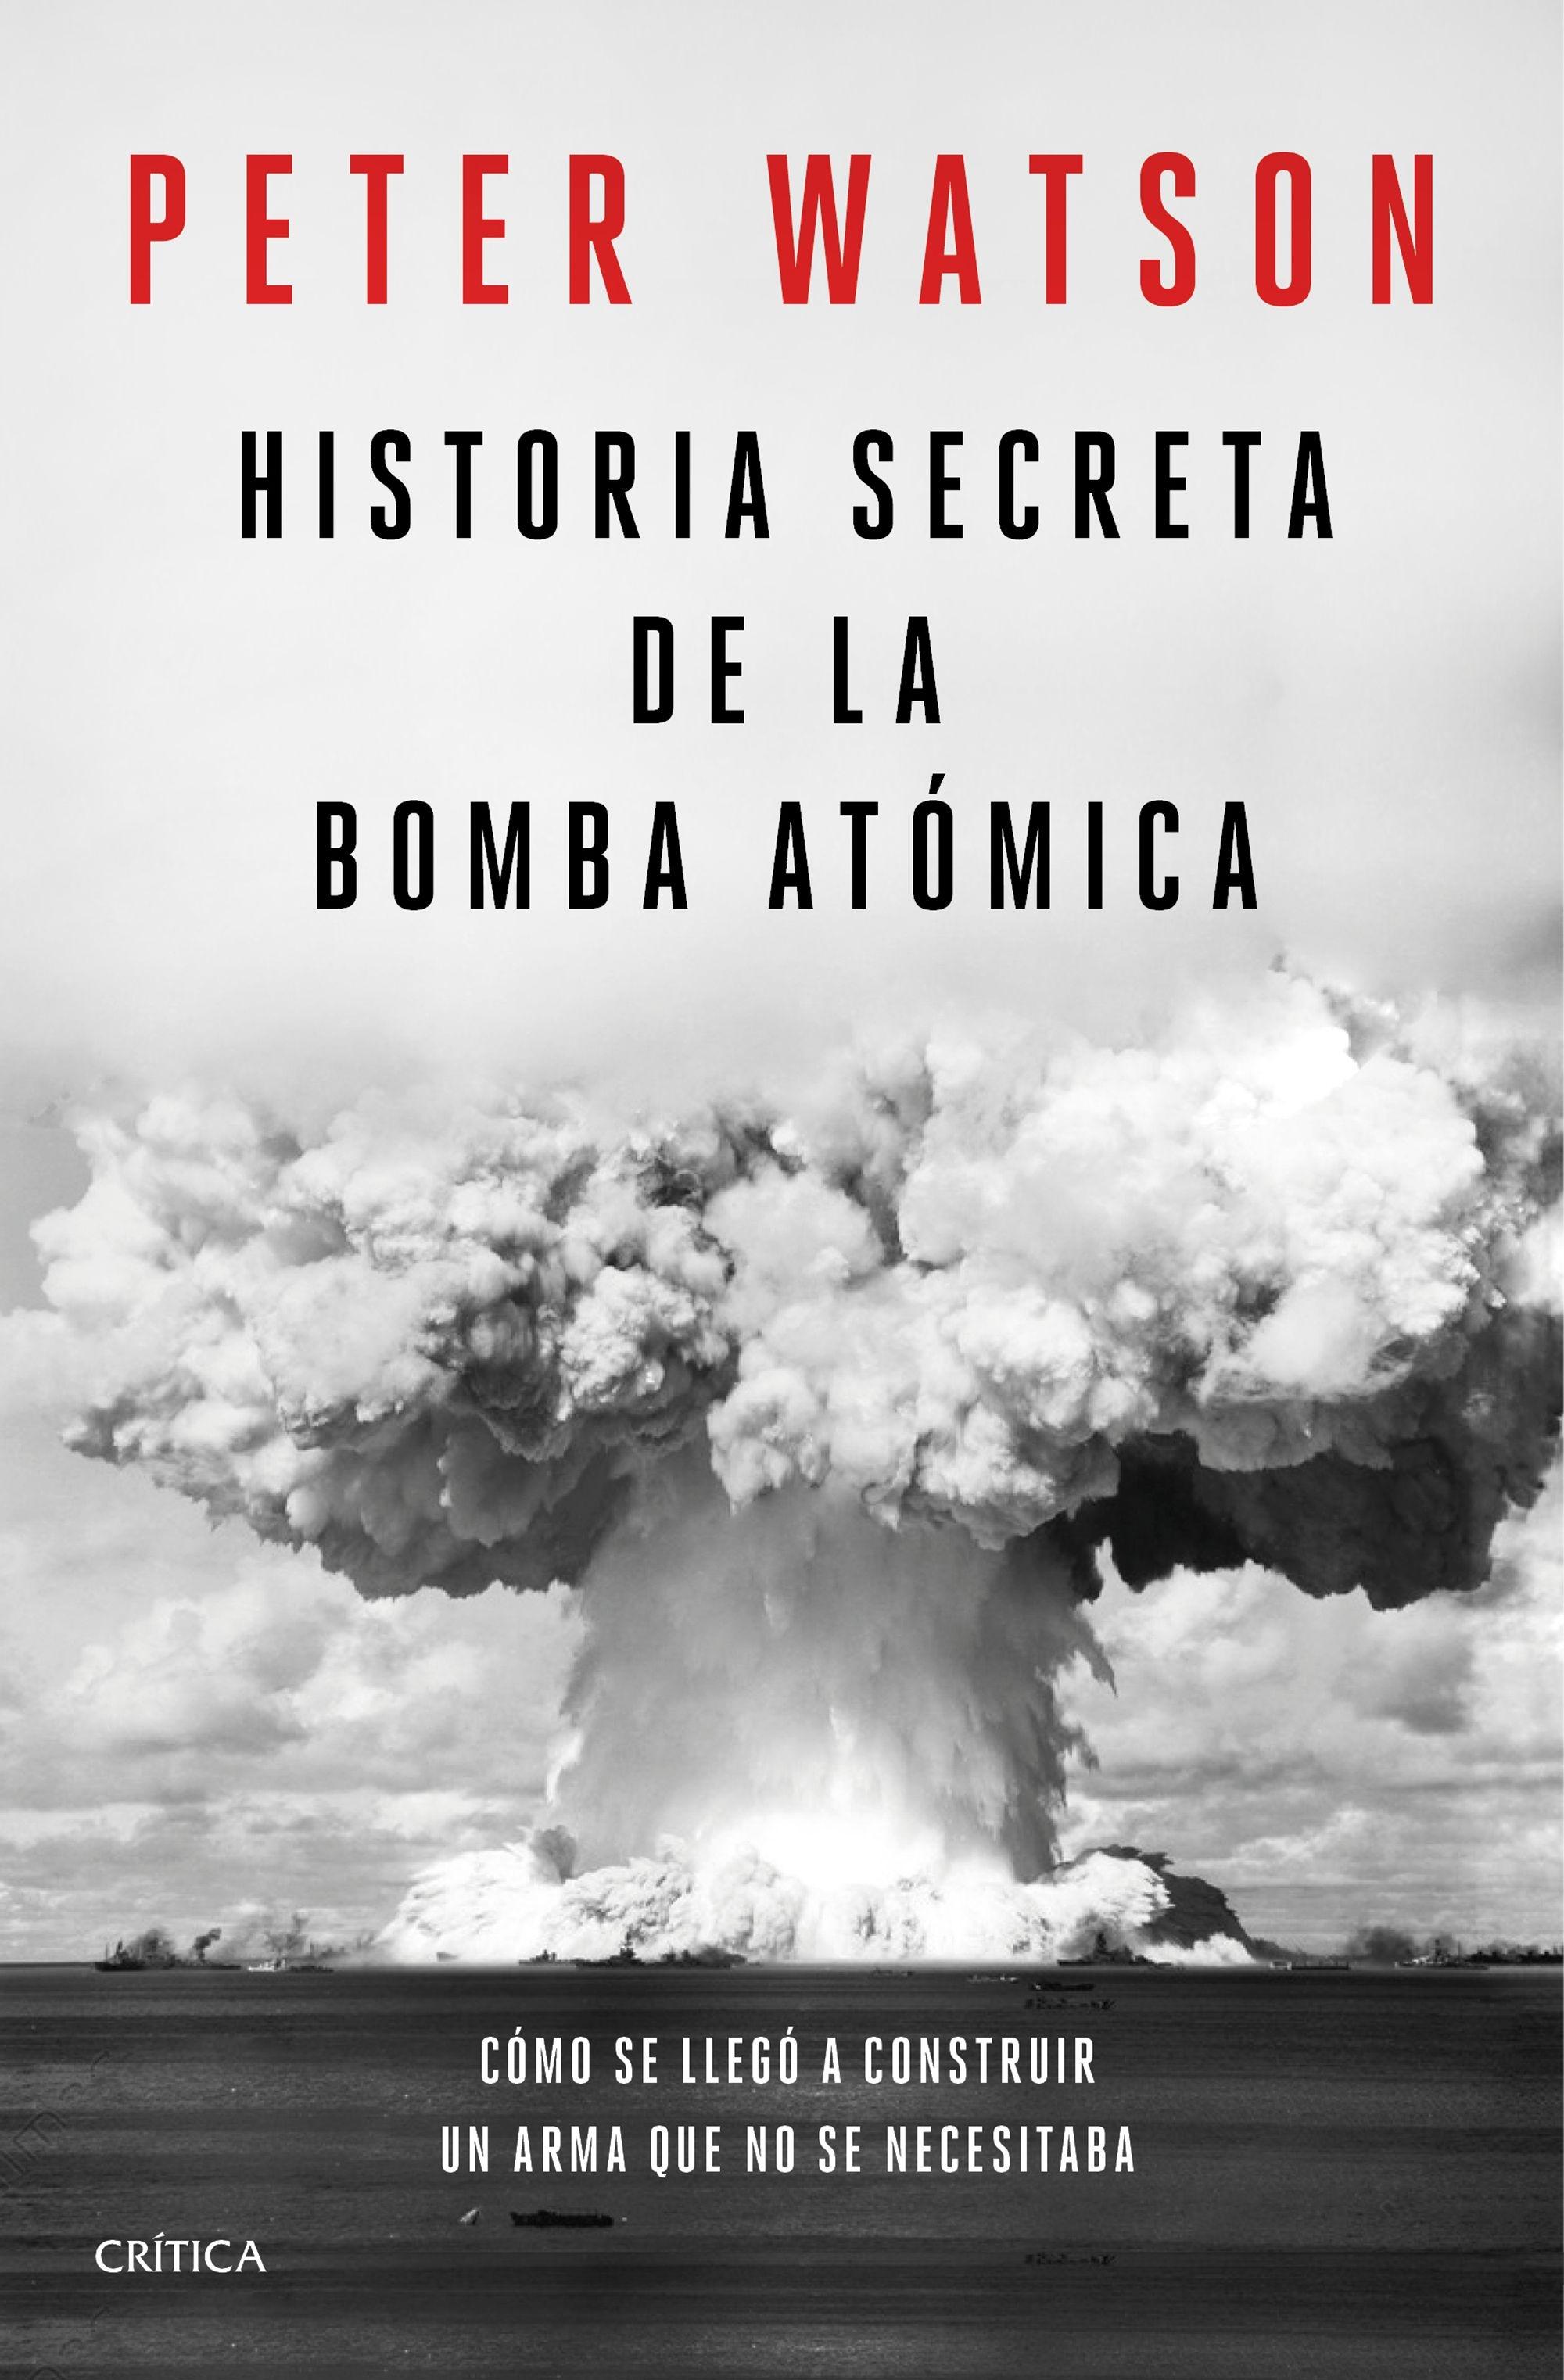 Historia secreta de la bomba atómica "Cómo se llegó a construir un arma que no se necesitaba"